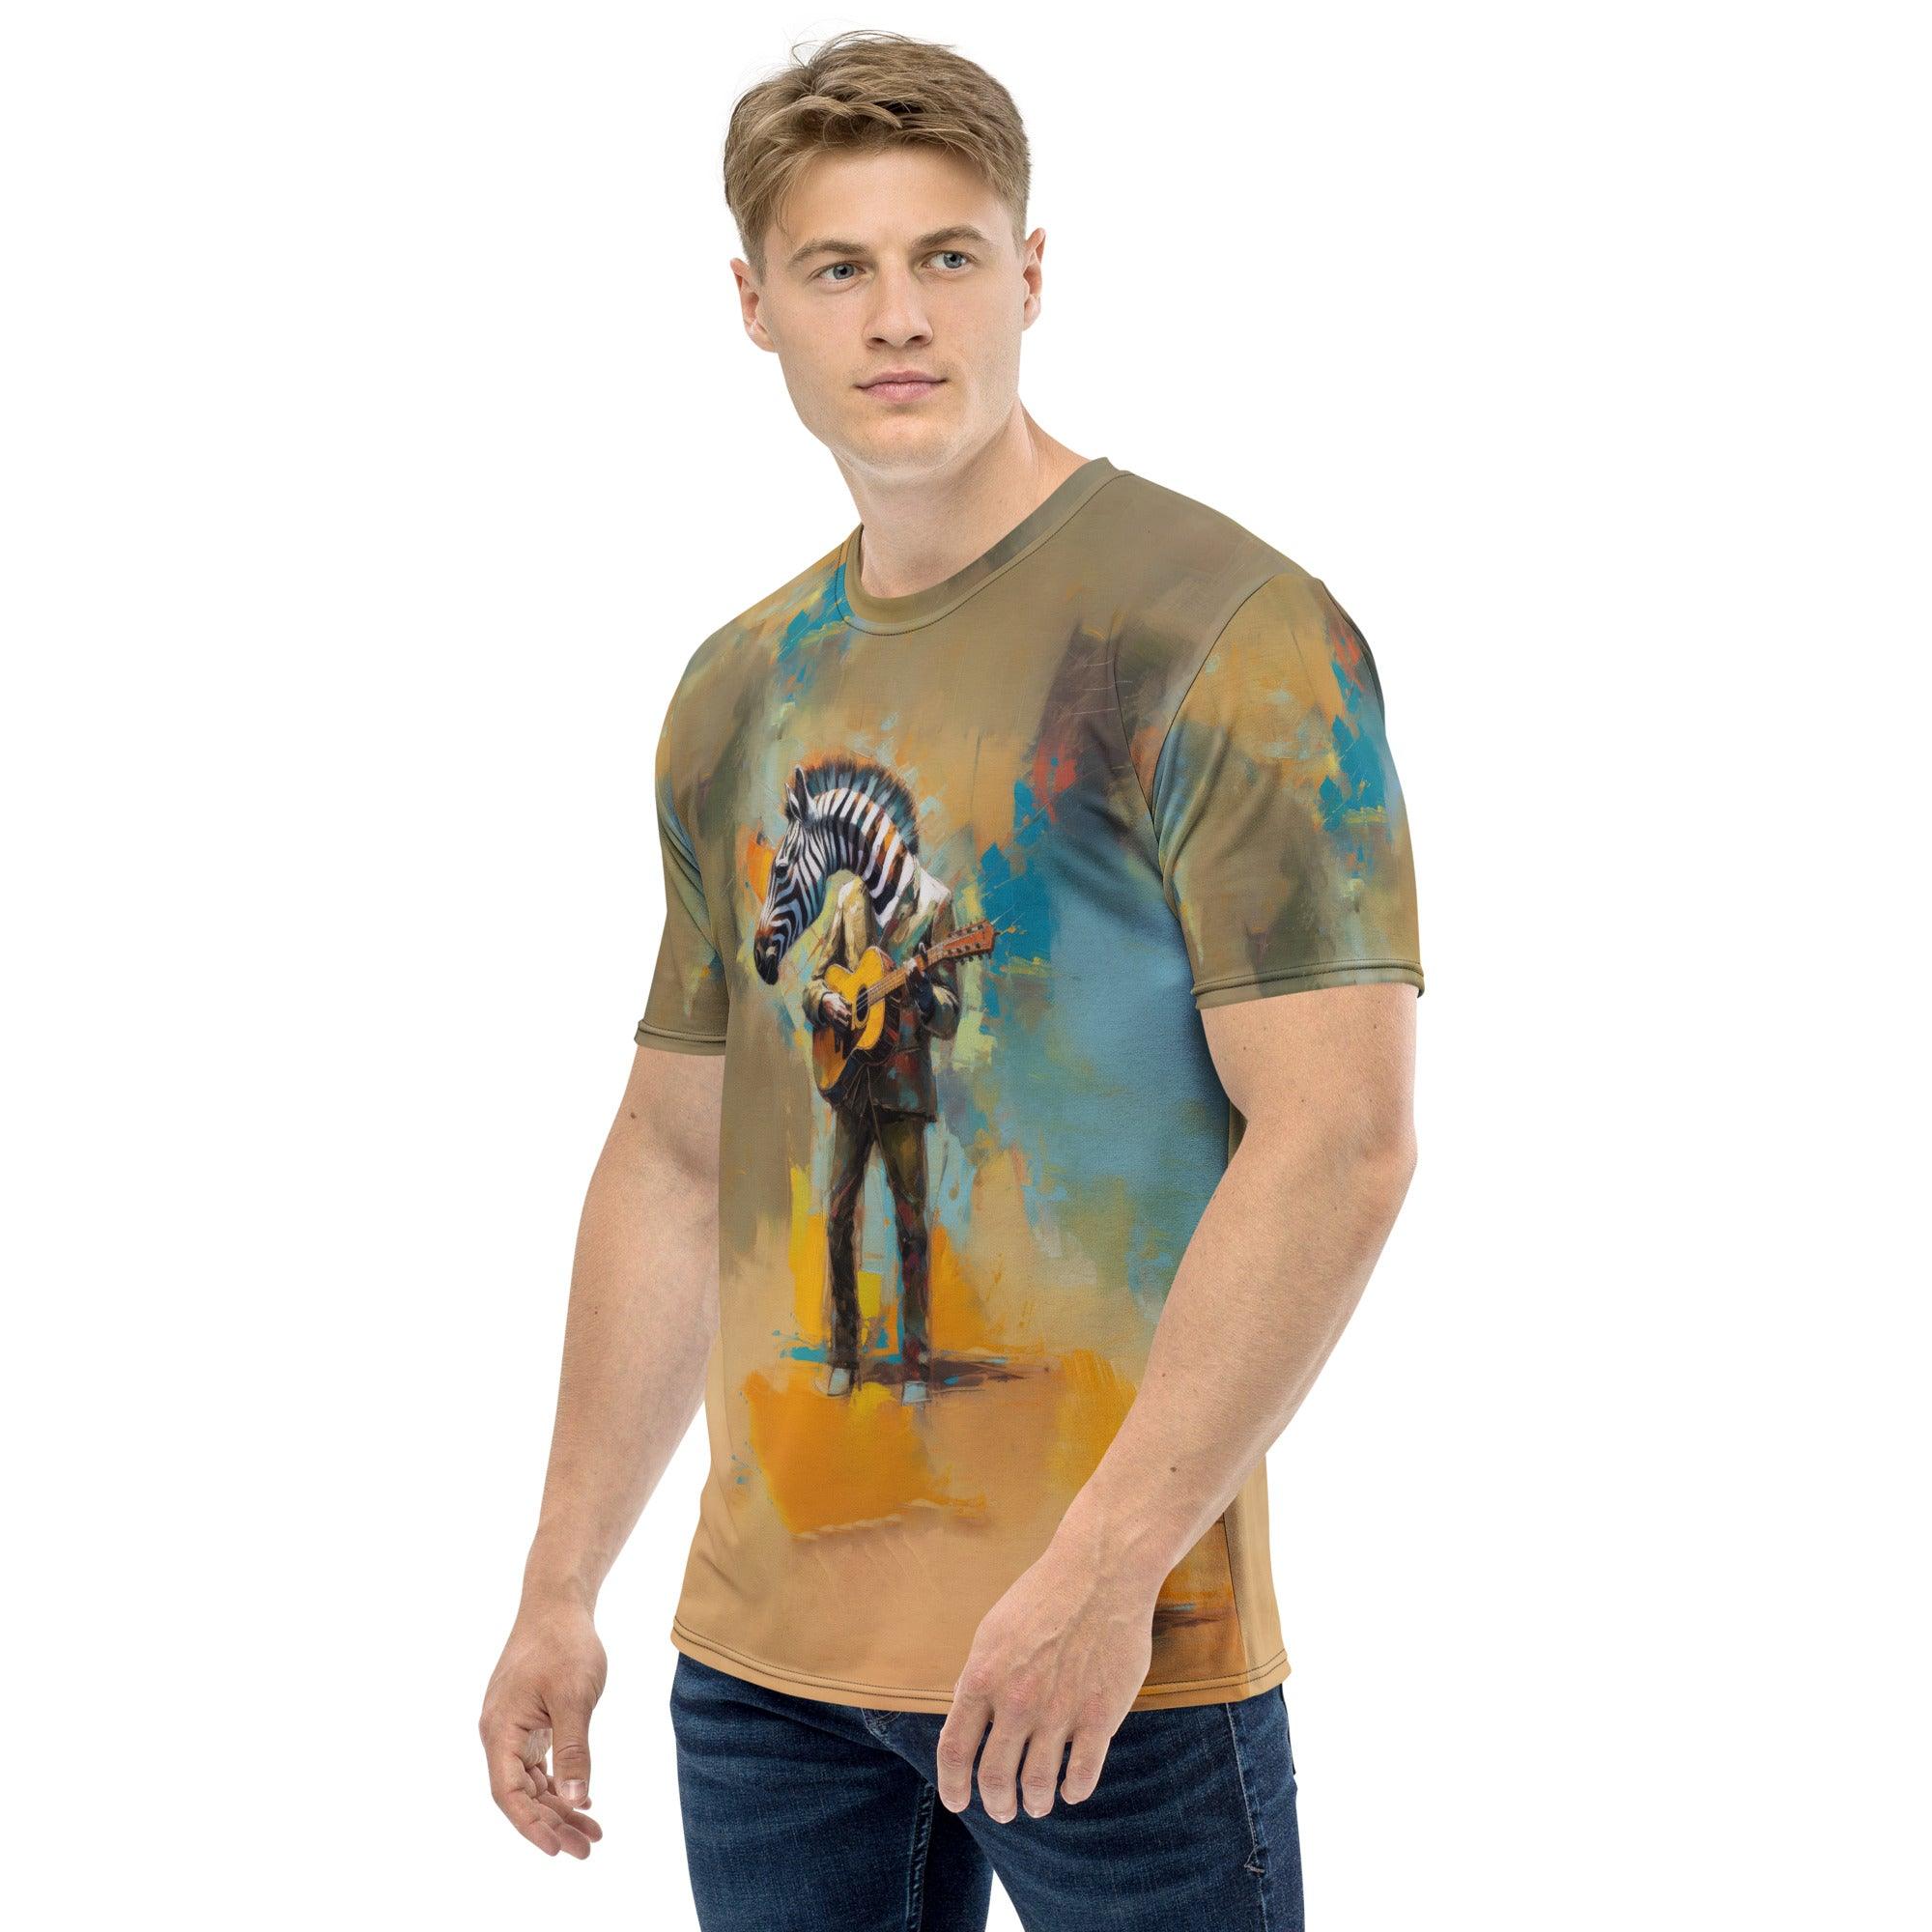 Strumming Symphony Men's T-Shirt - Beyond T-shirts